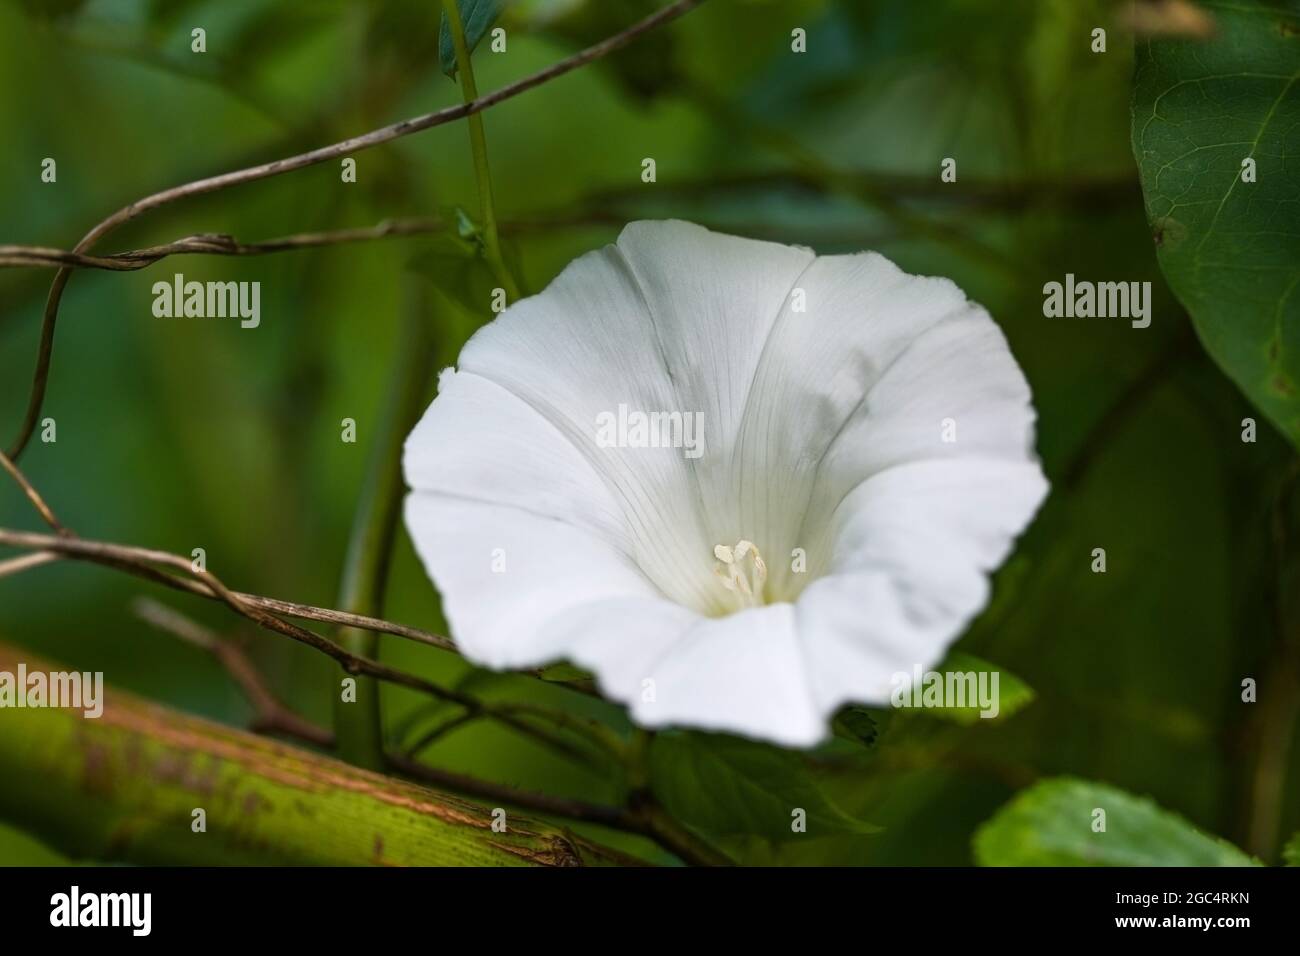 Calice de l'herbe blanche à haies (Calystegia sepium), une mauvaise herbe vivace persistante qui se tord autour d'autres plantes mais qui fleurit avec de belles fleurs blanches, cop Banque D'Images